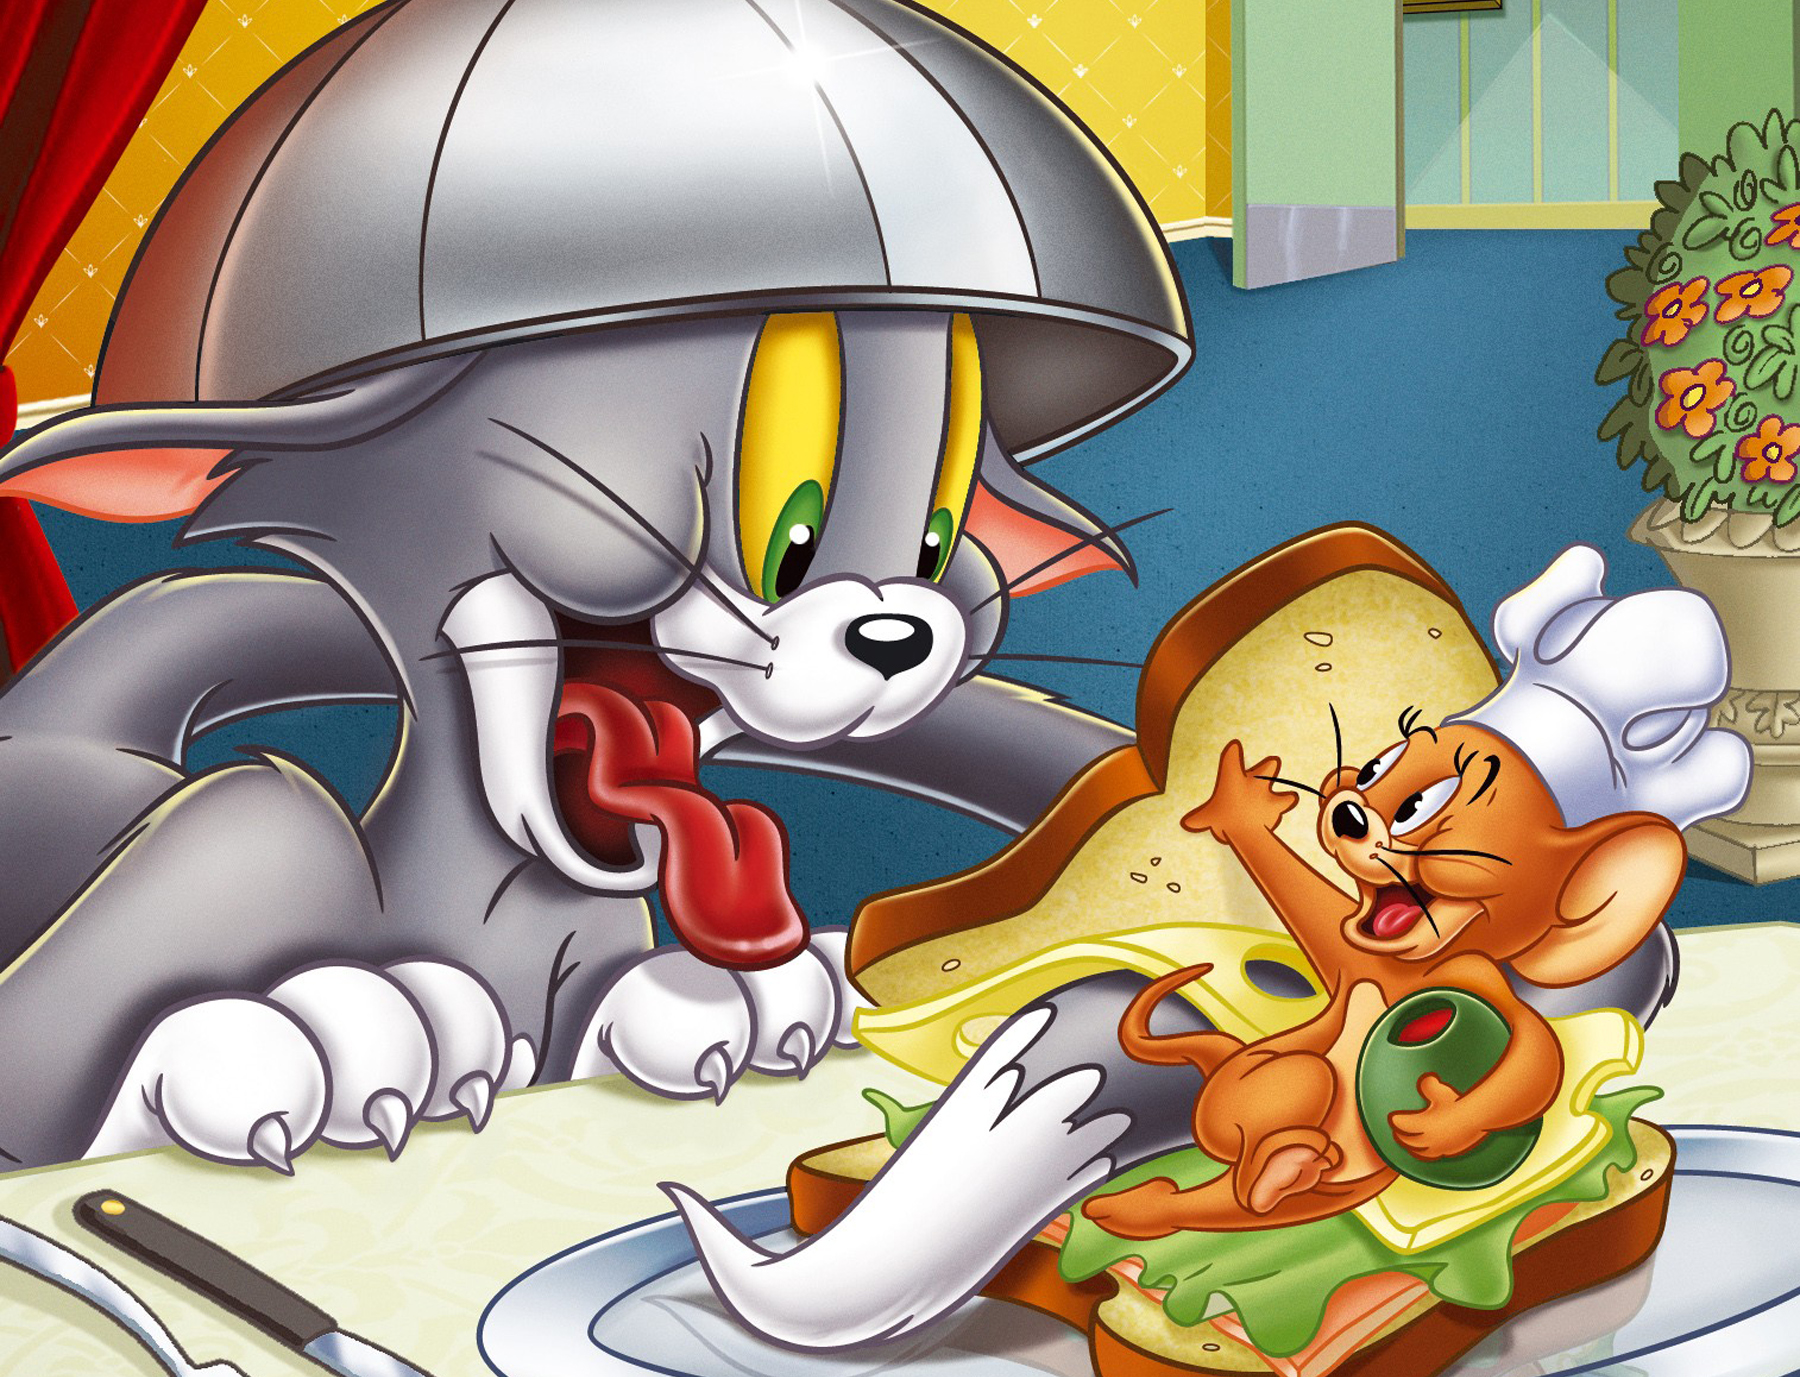 Đồ họa máy tính đẹp mắt của Tom và Jerry